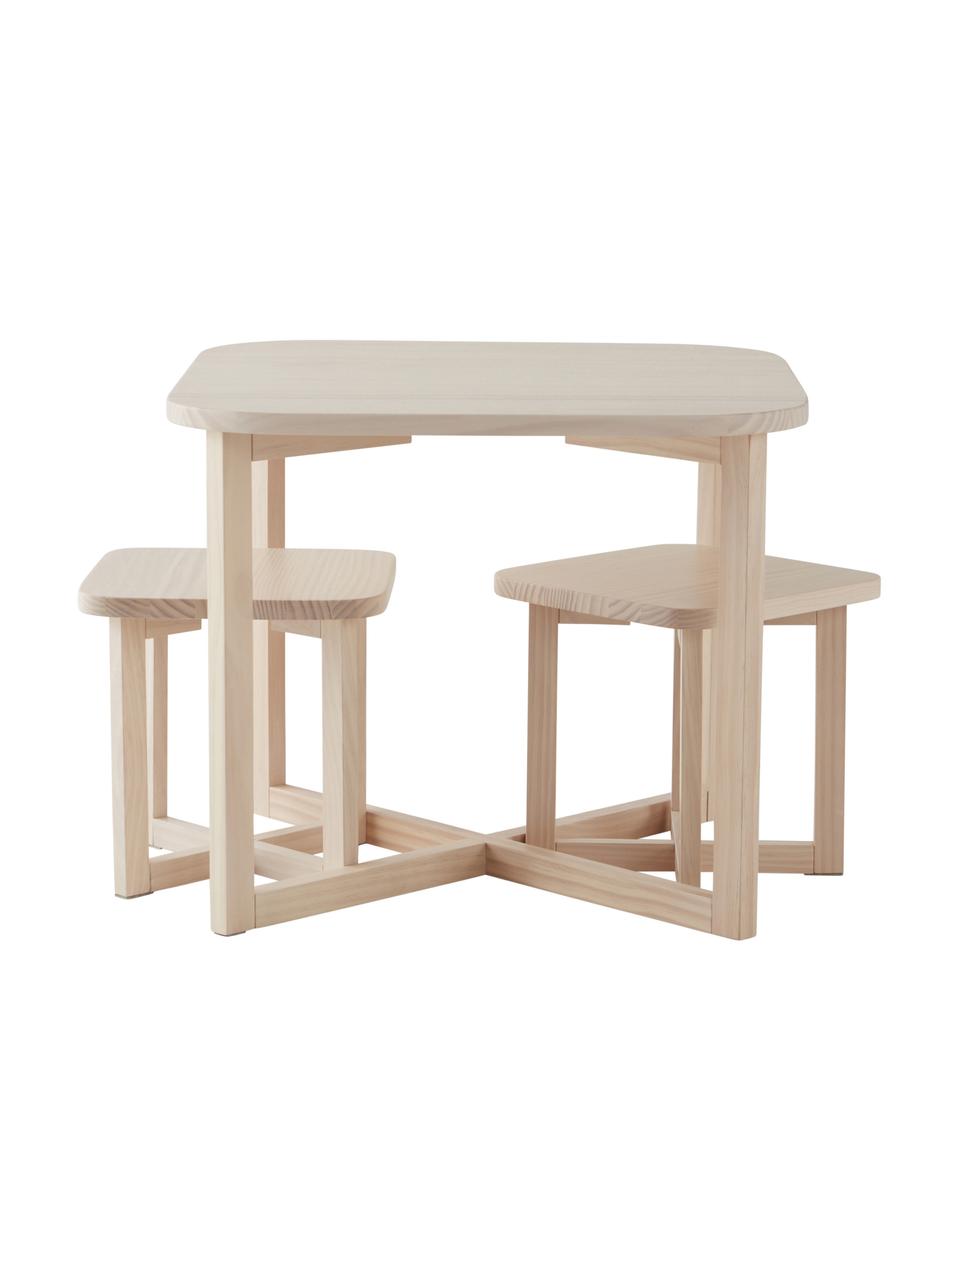 Kindertisch-Set Benny aus Holz, 3-tlg., FSC-zertifiziertes Kiefernholz, Helles Holz, Set mit verschiedenen Größen